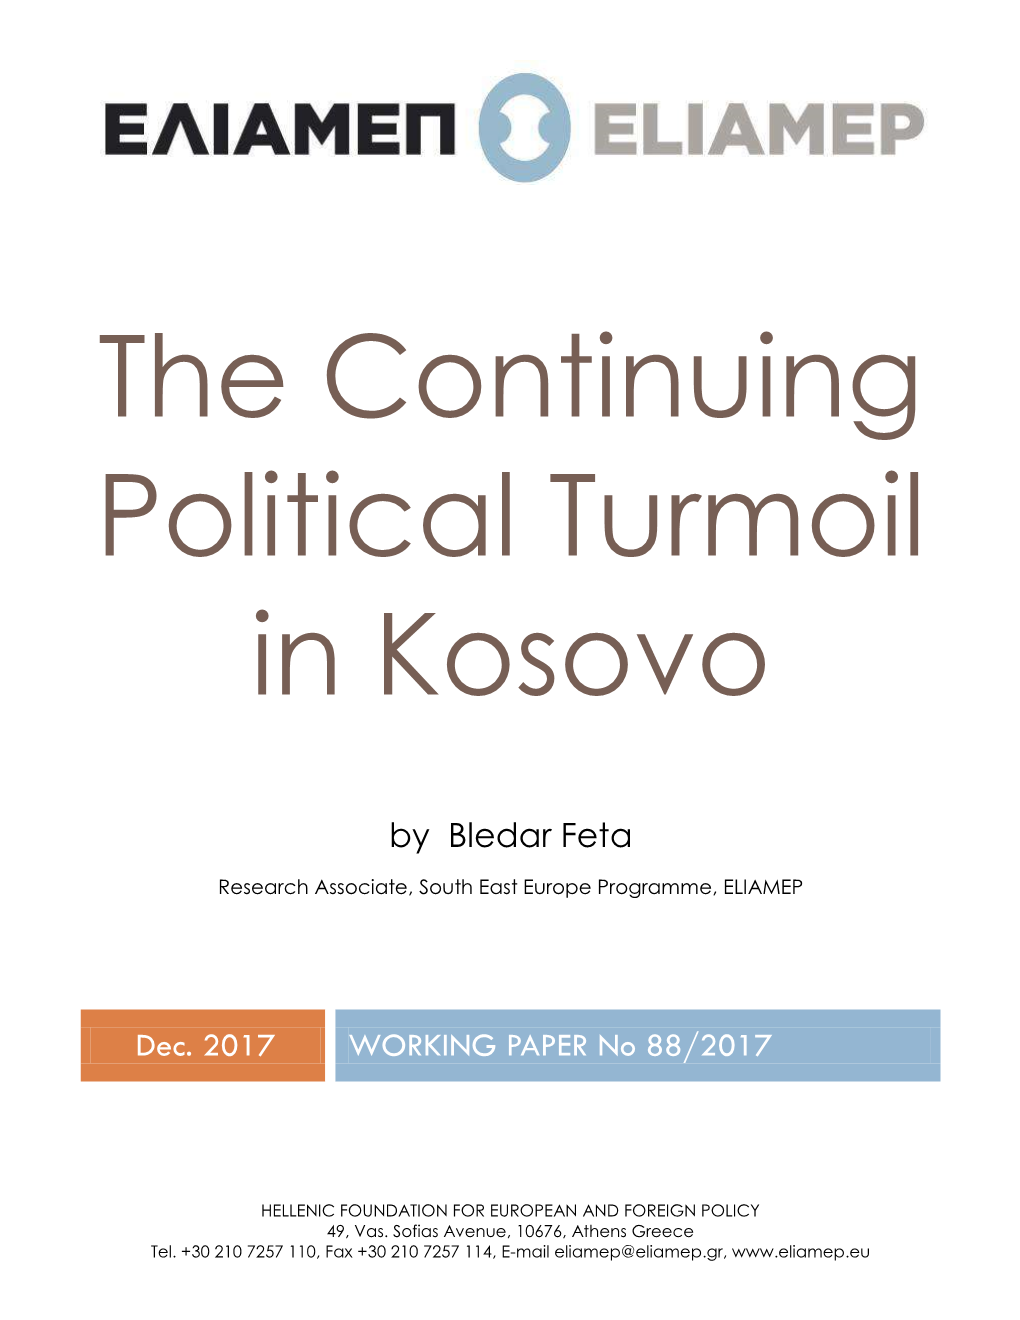 The Continuing Political Turmoil in Kosovo